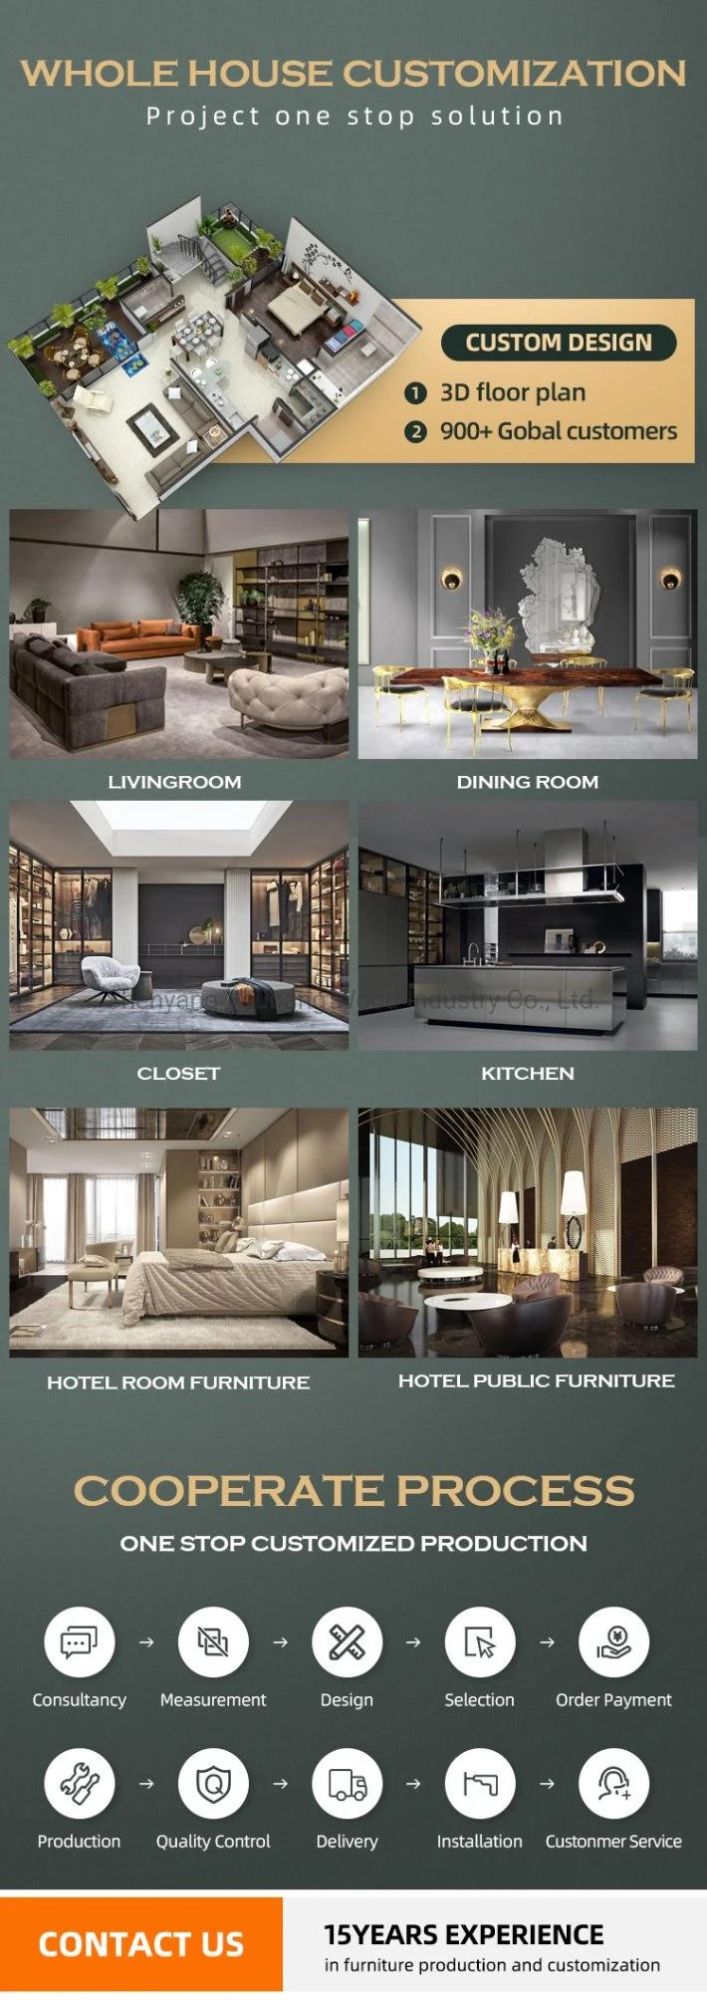 Cheap 2022 design Bedroom Modern Cabinet Furniture Sets